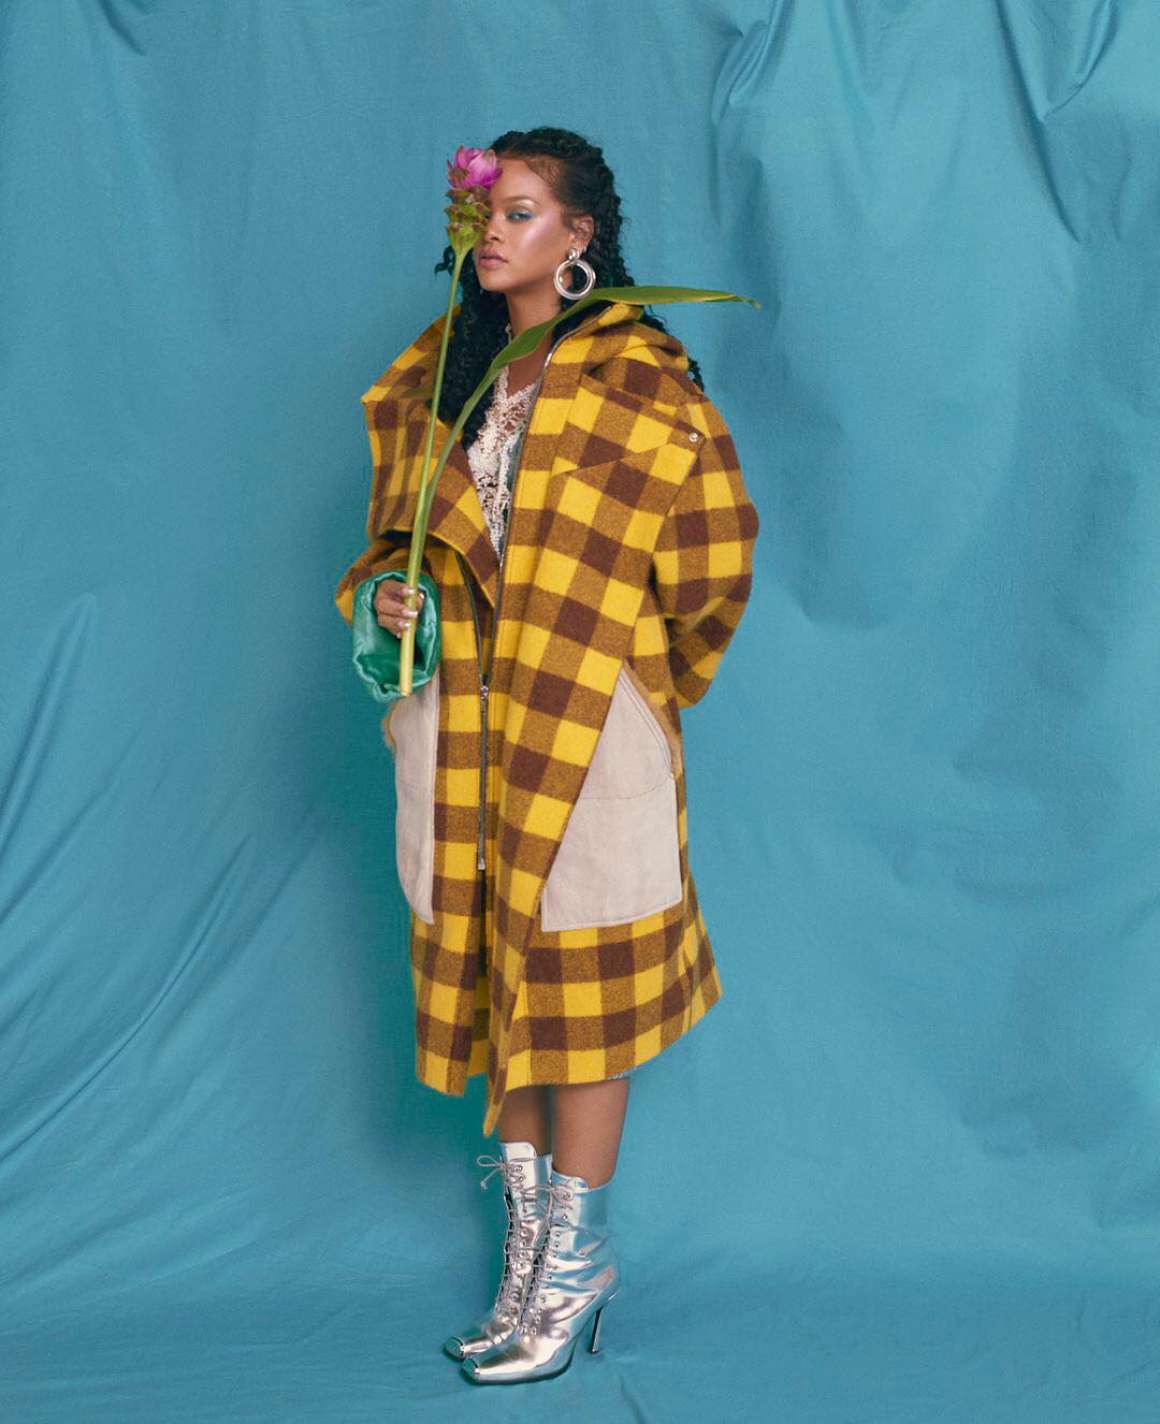 Rihanna for Allure Magazine (October 2018)